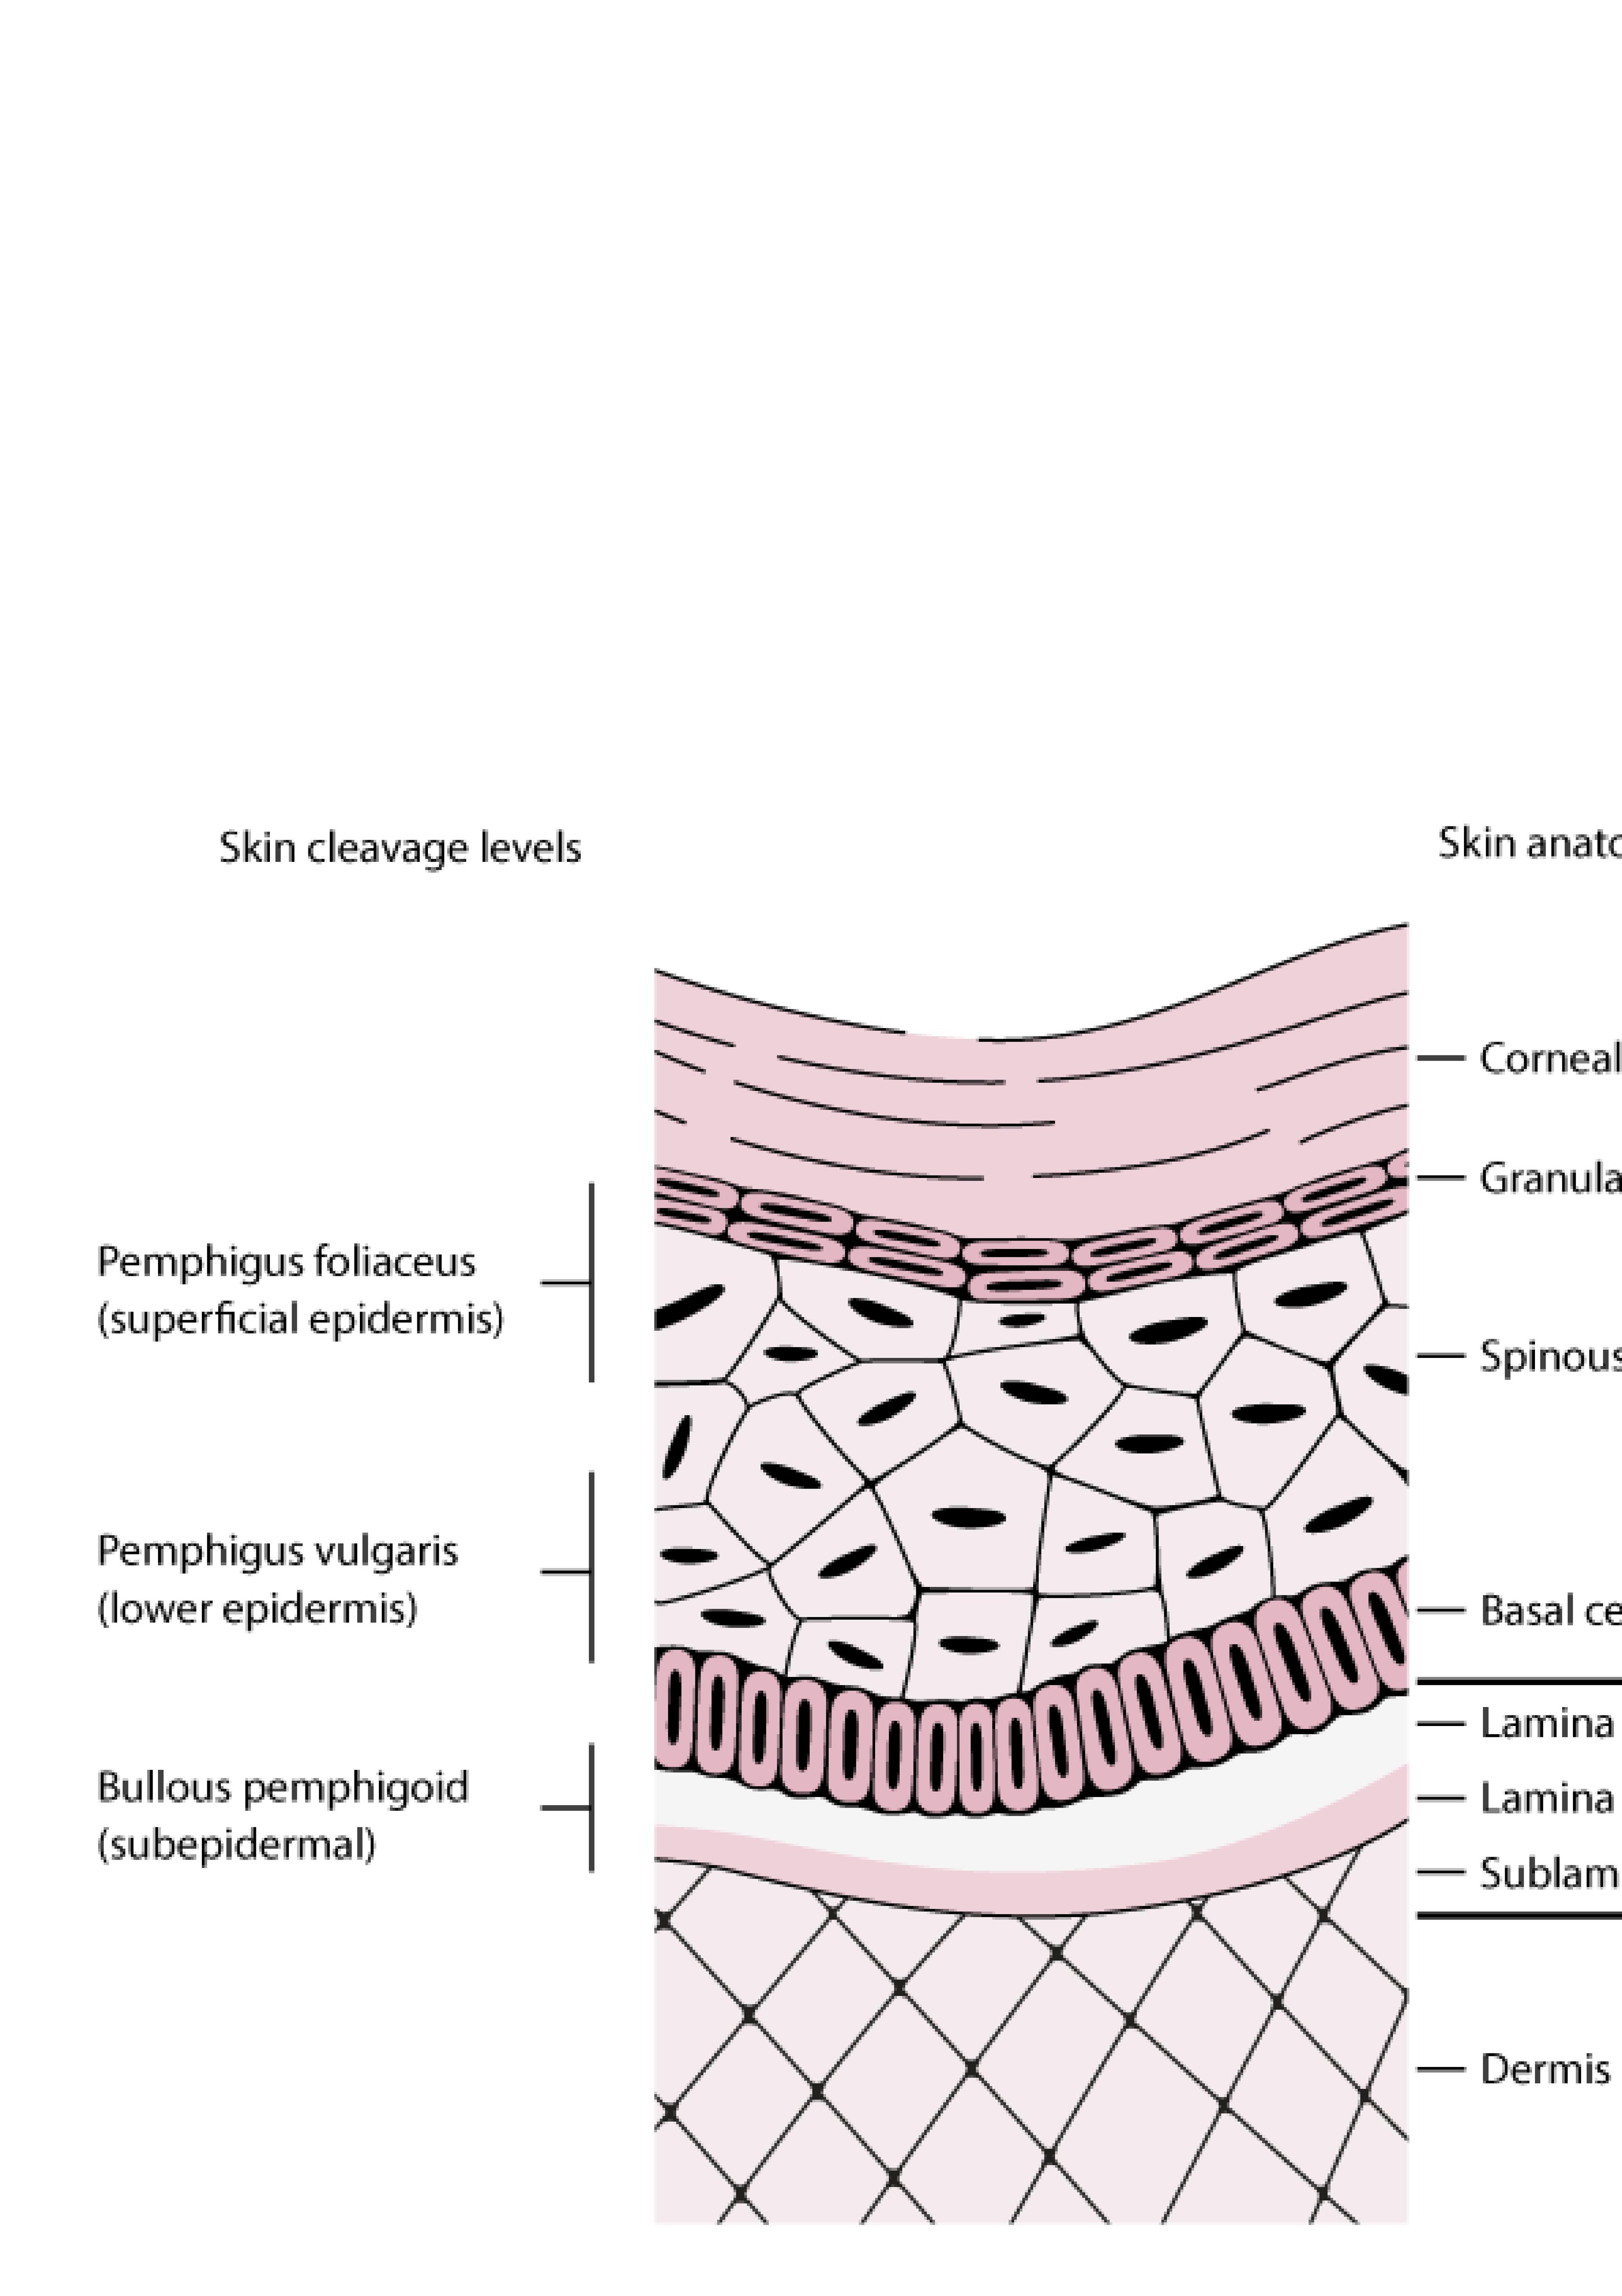 Níveis de clivagem cutânea no pênfigo e penfigoide bolhoso